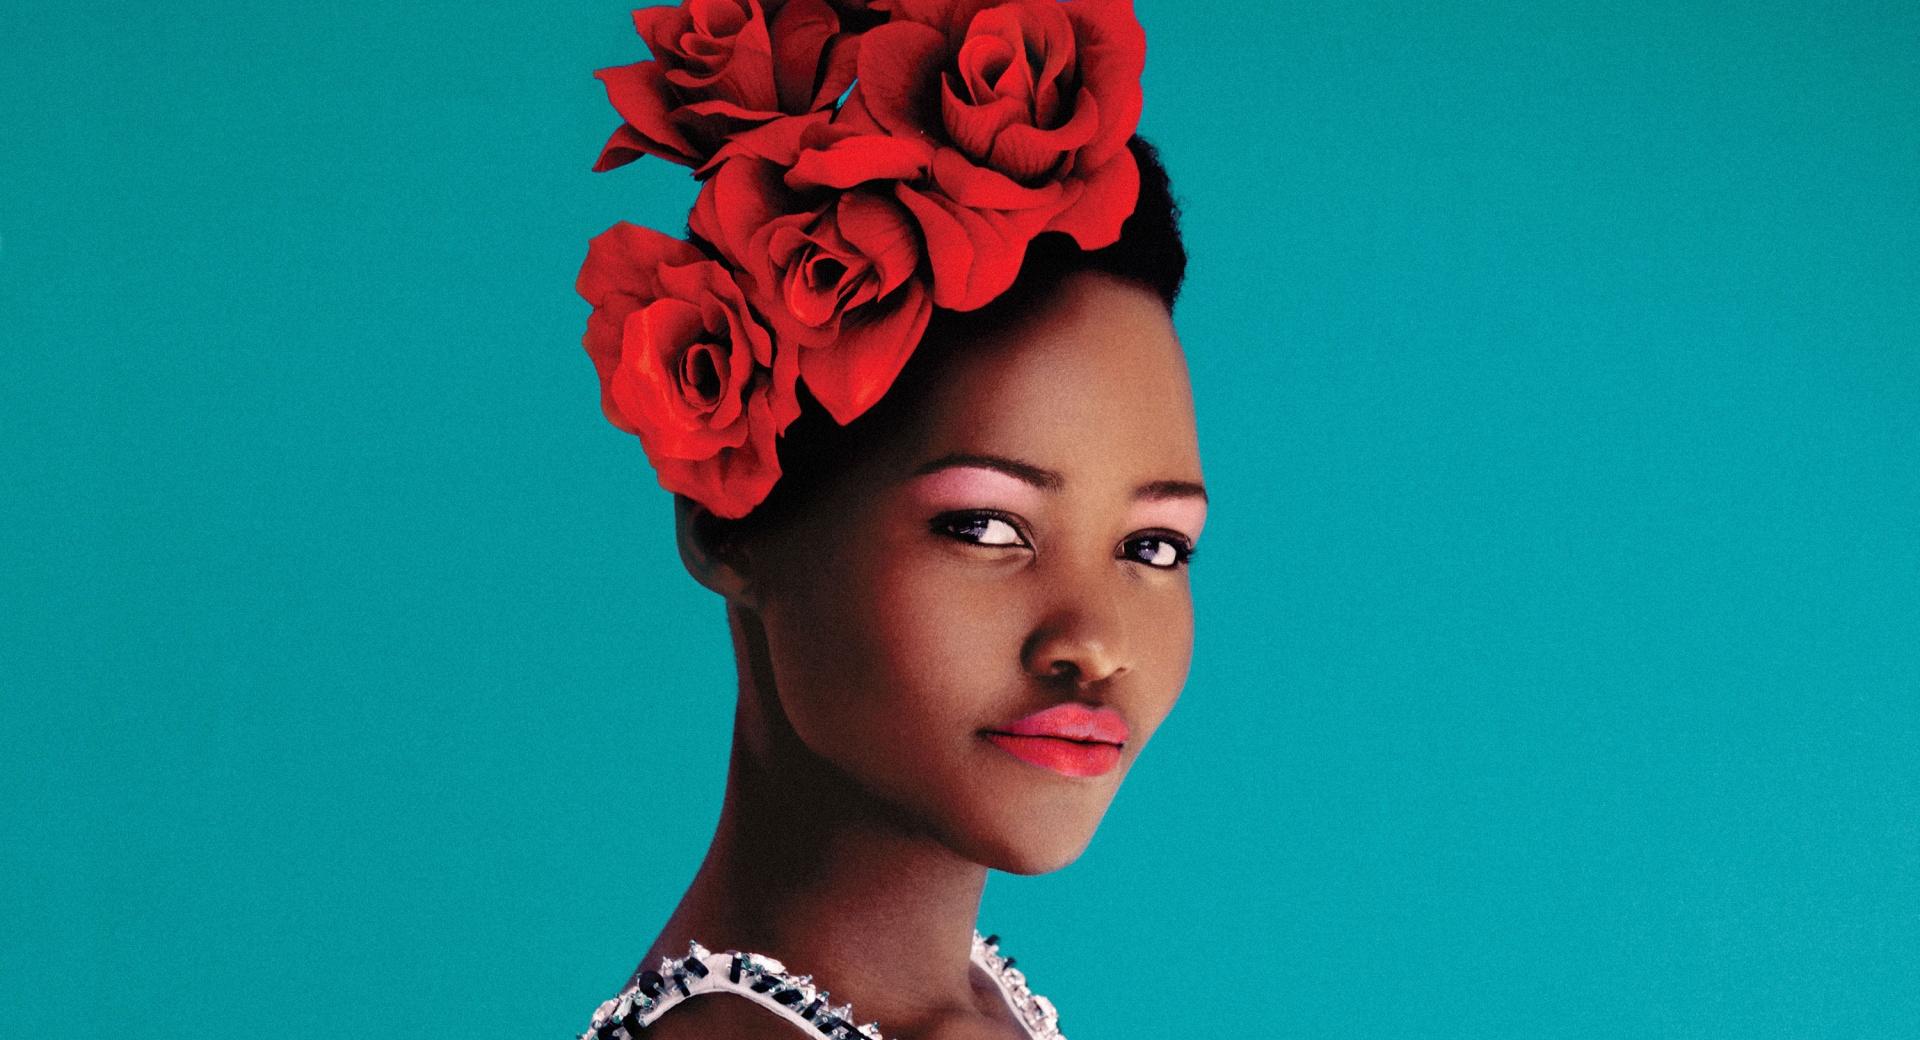 Lupita Nyongo Portrait at 2048 x 2048 iPad size wallpapers HD quality